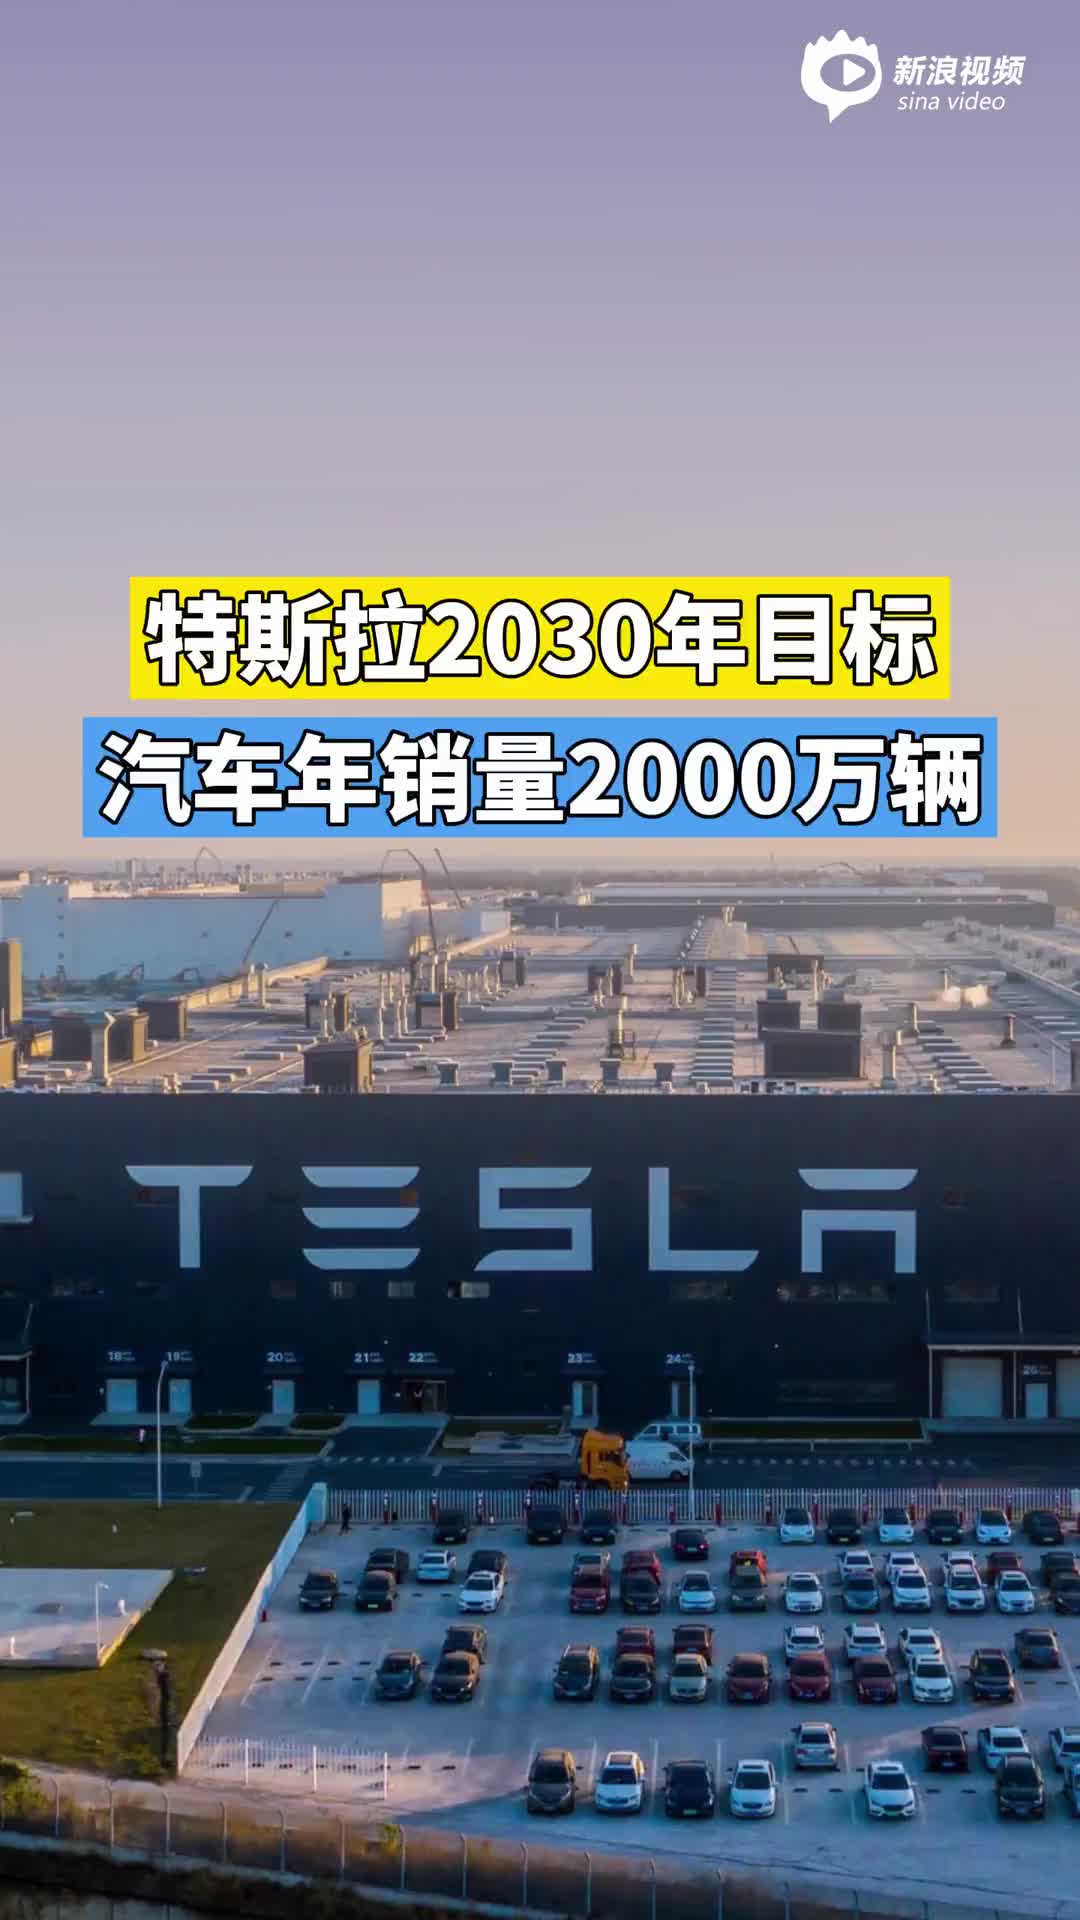 特斯拉2030年目标汽车年销量2000万辆